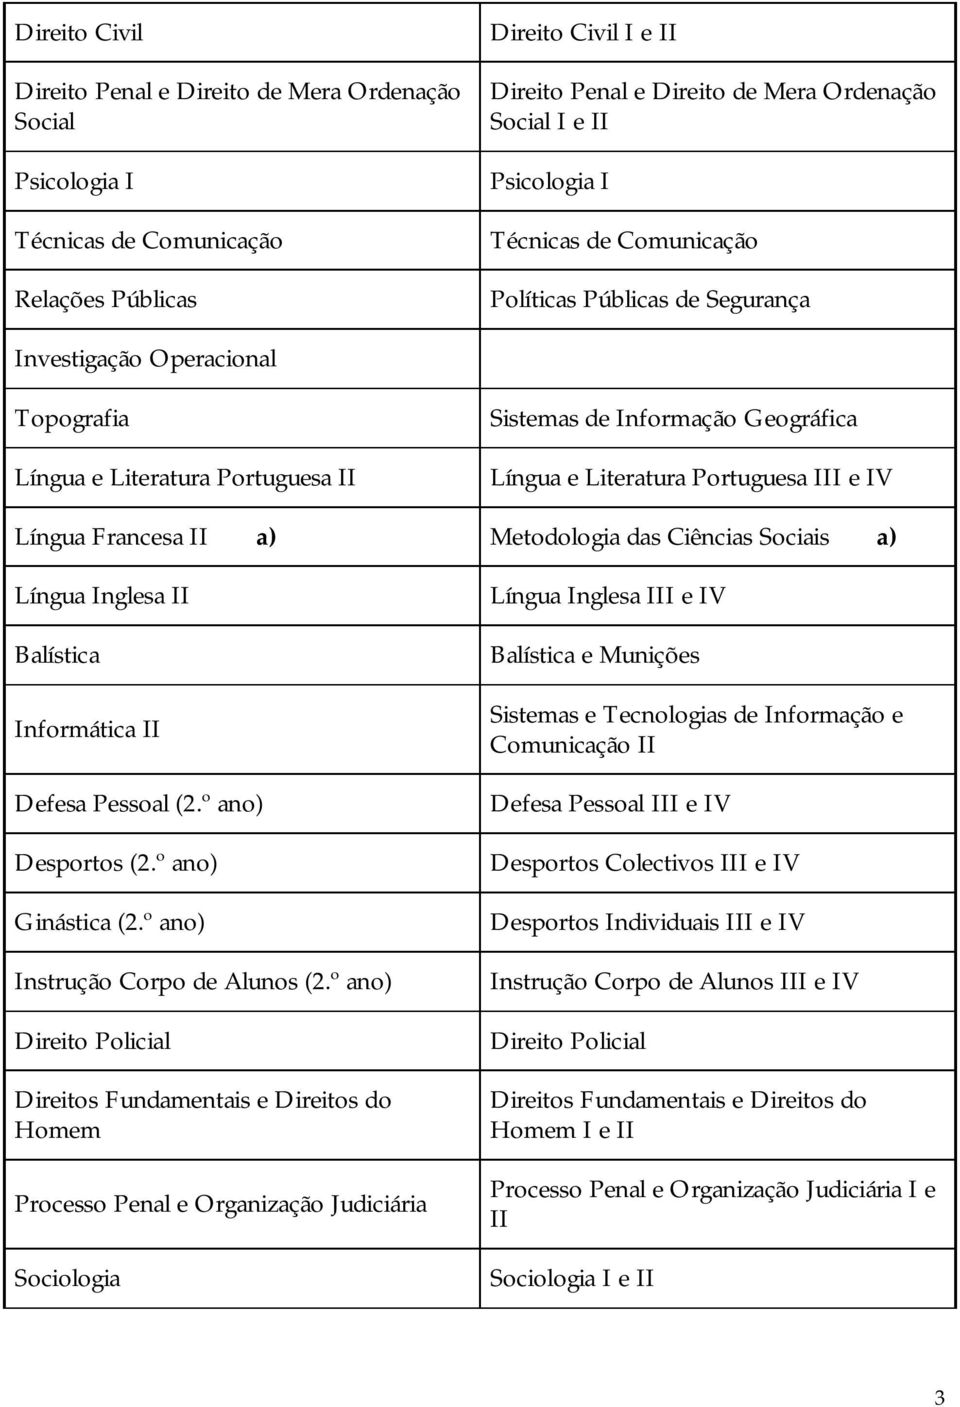 Portuguesa III e IV Língua Francesa II a) Metodologia das Ciências Sociais a) Língua Inglesa II Balística Informática II Defesa Pessoal (2.º ano) Desportos (2.º ano) Ginástica (2.